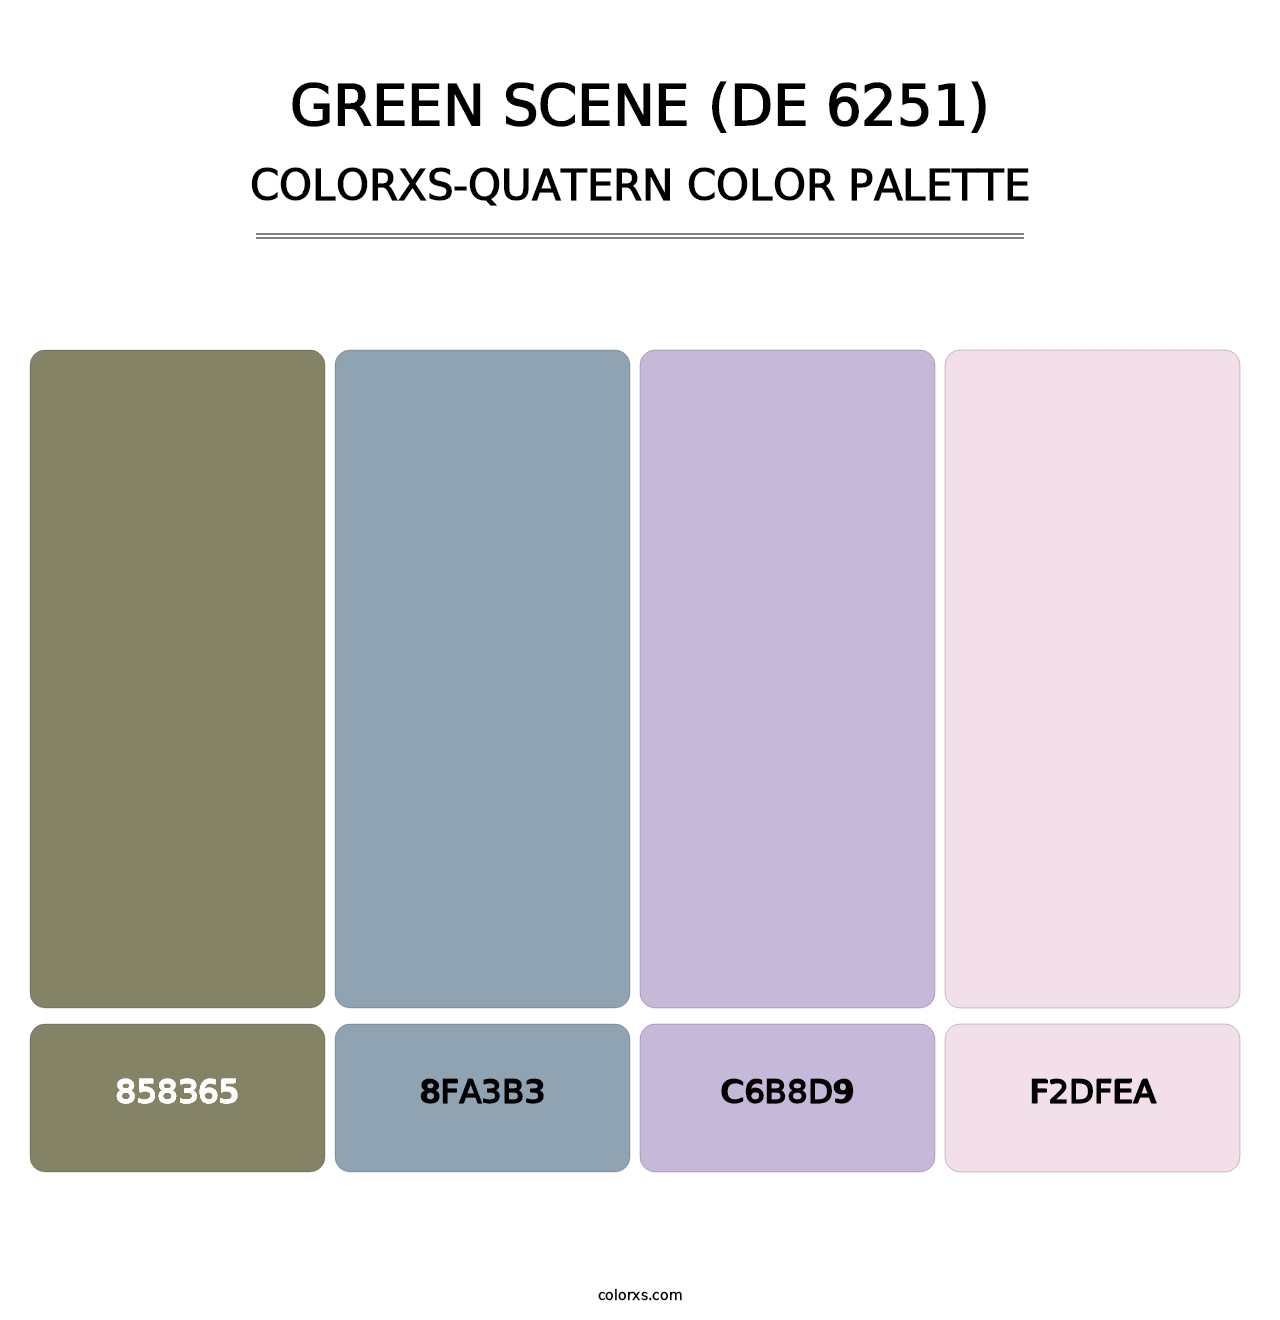 Green Scene (DE 6251) - Colorxs Quatern Palette